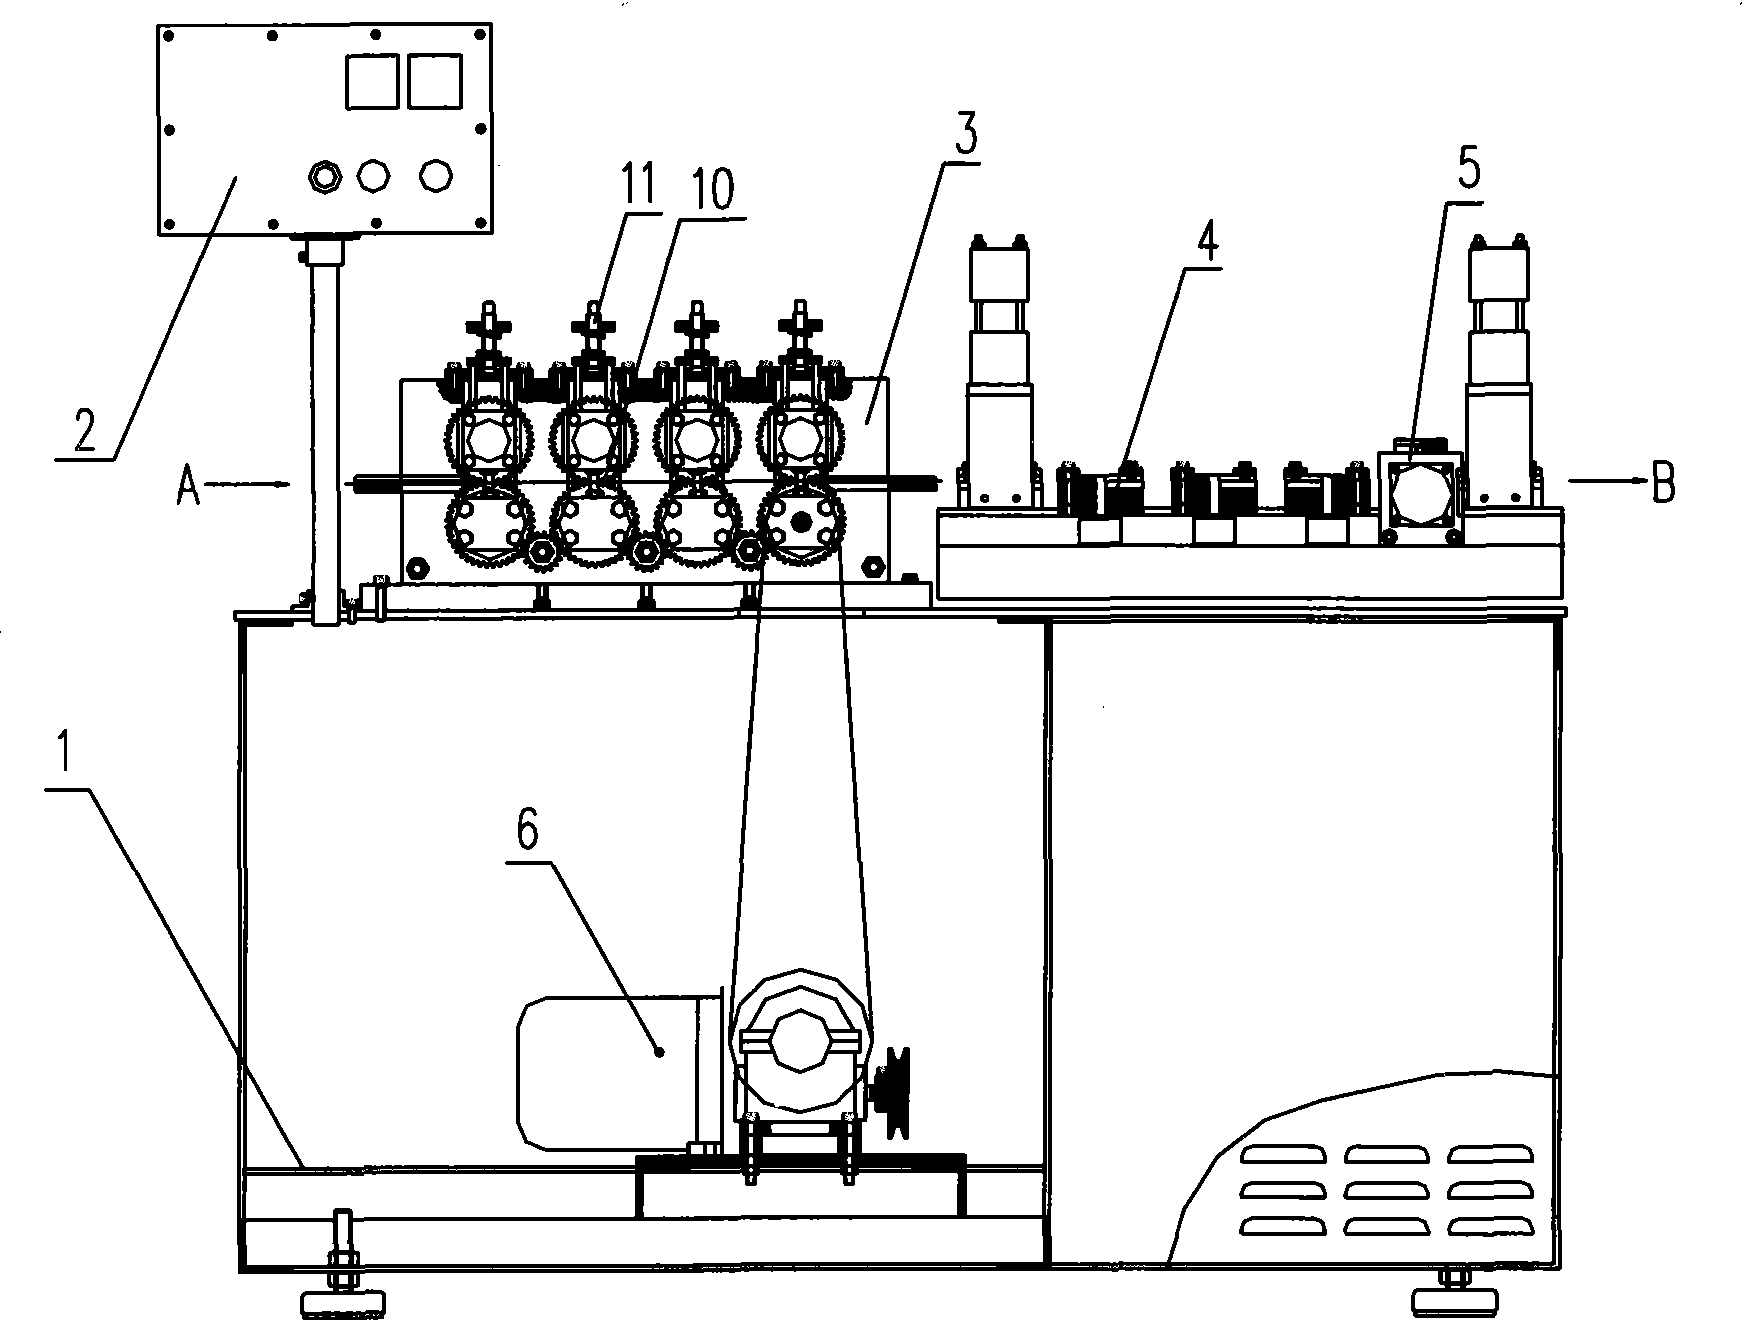 Metal blade forming machine